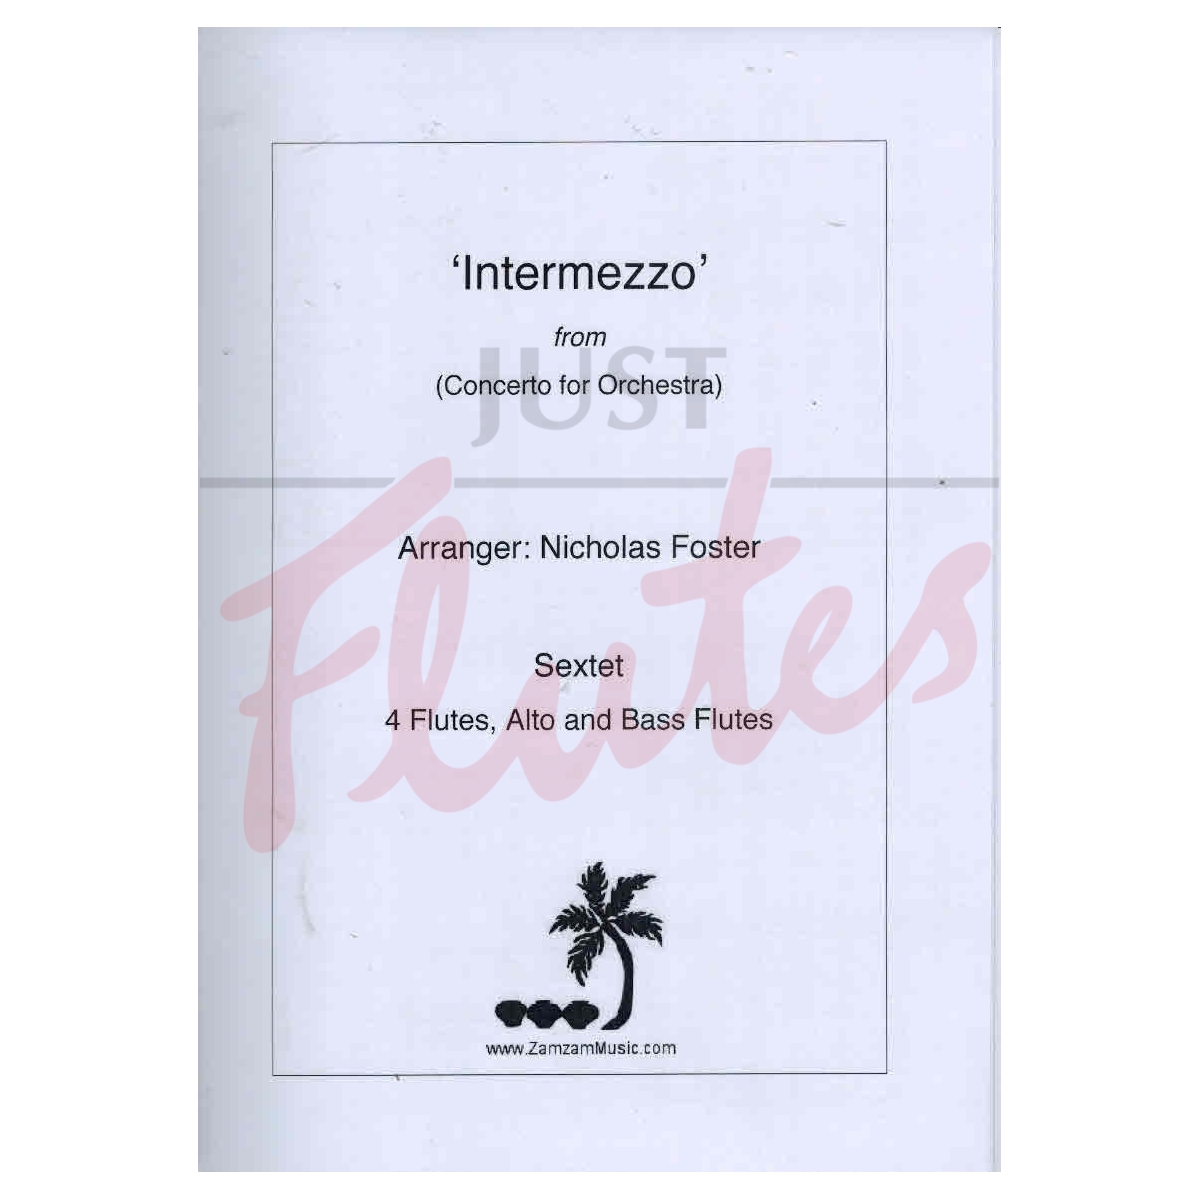 Intermezzo from Concerto for Orchestra